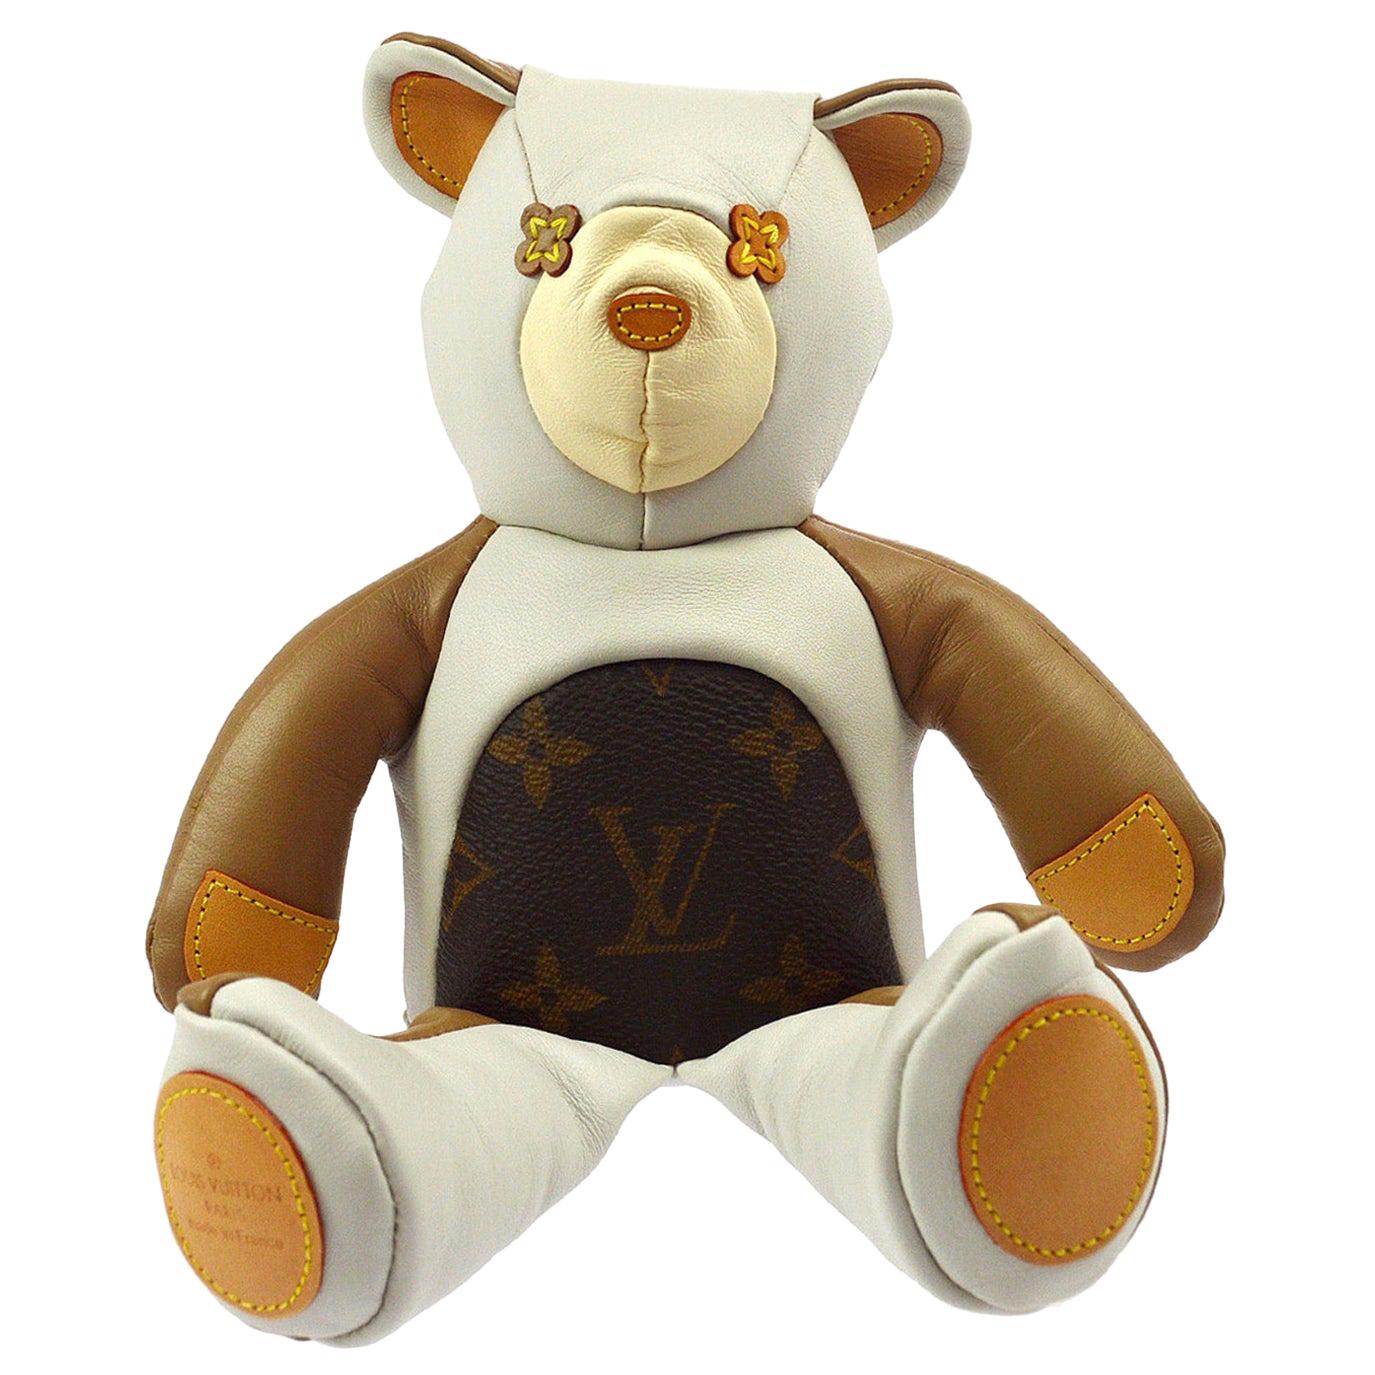 LV Teddy Bear